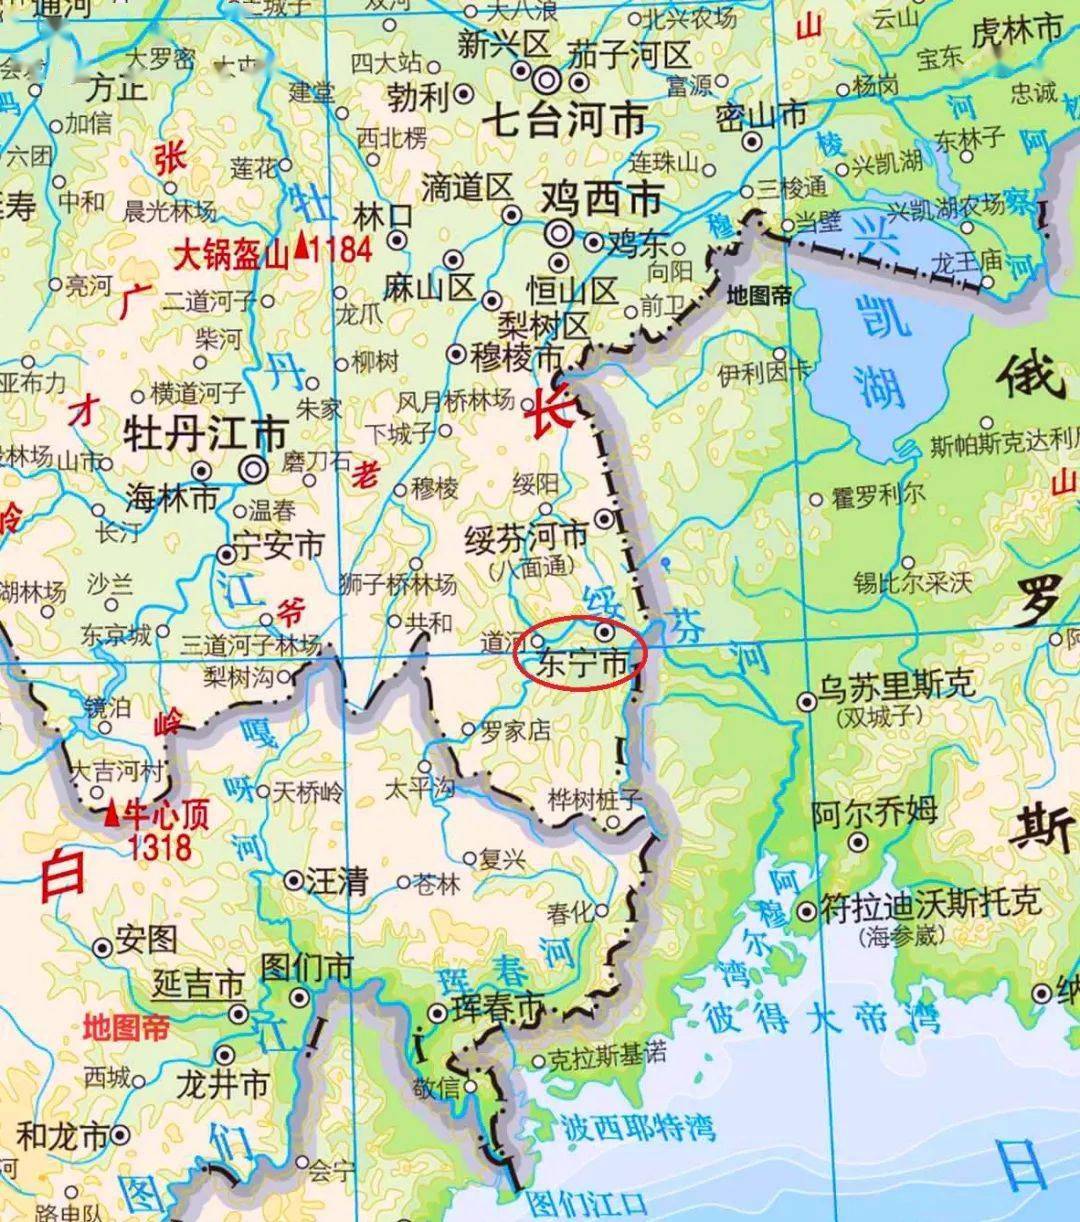 滨海边疆区详细地图图片